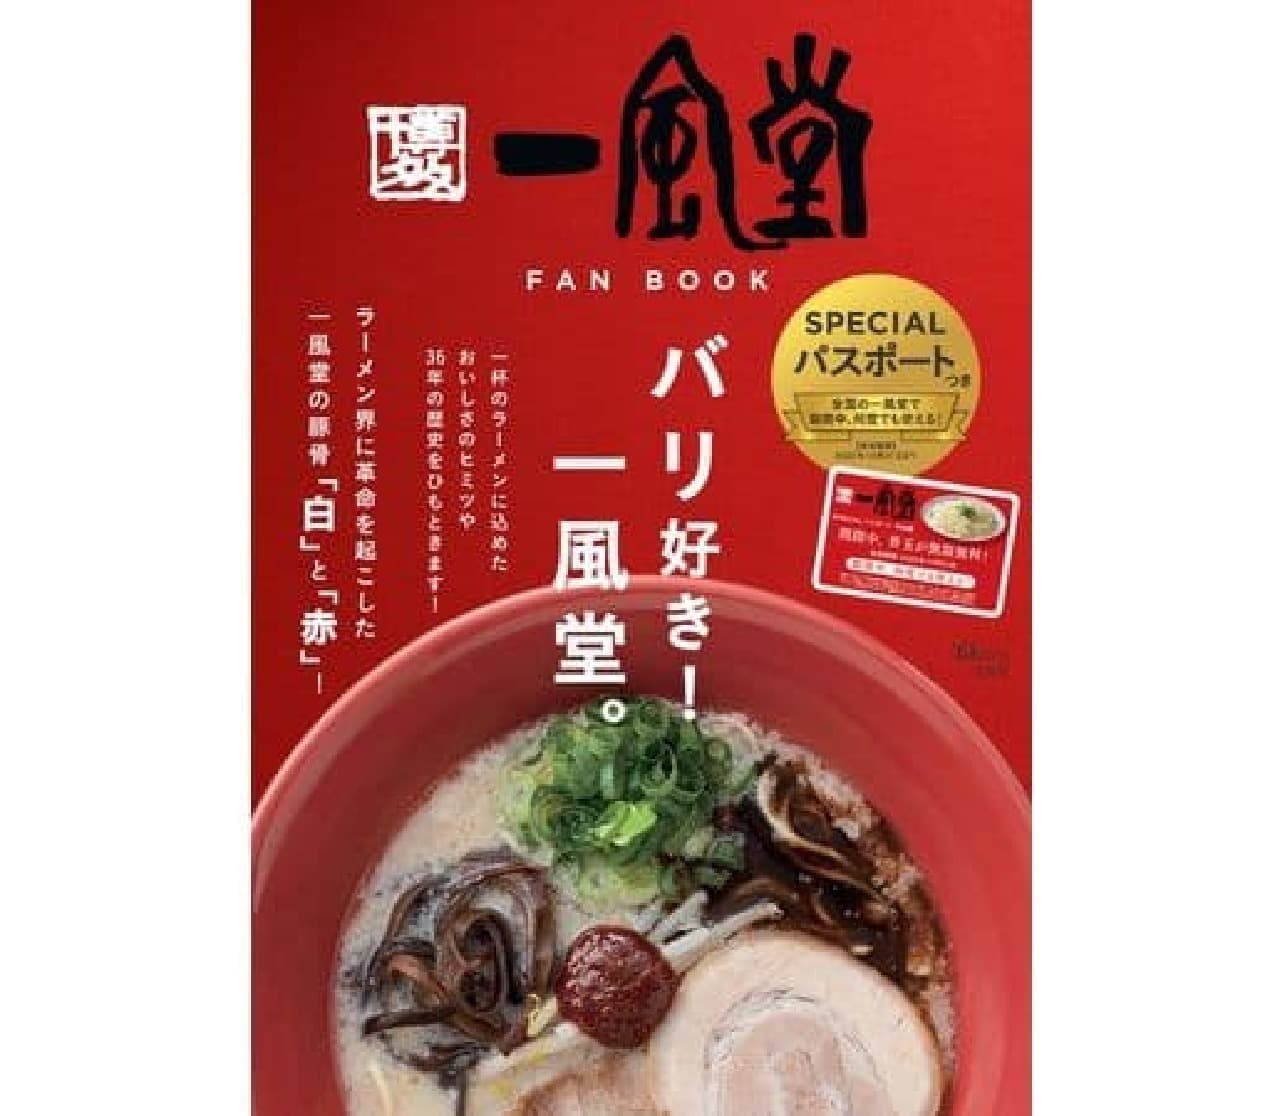 宝島社の人気飲食チェーン公式ファンブック「一風堂 FAN BOOK」